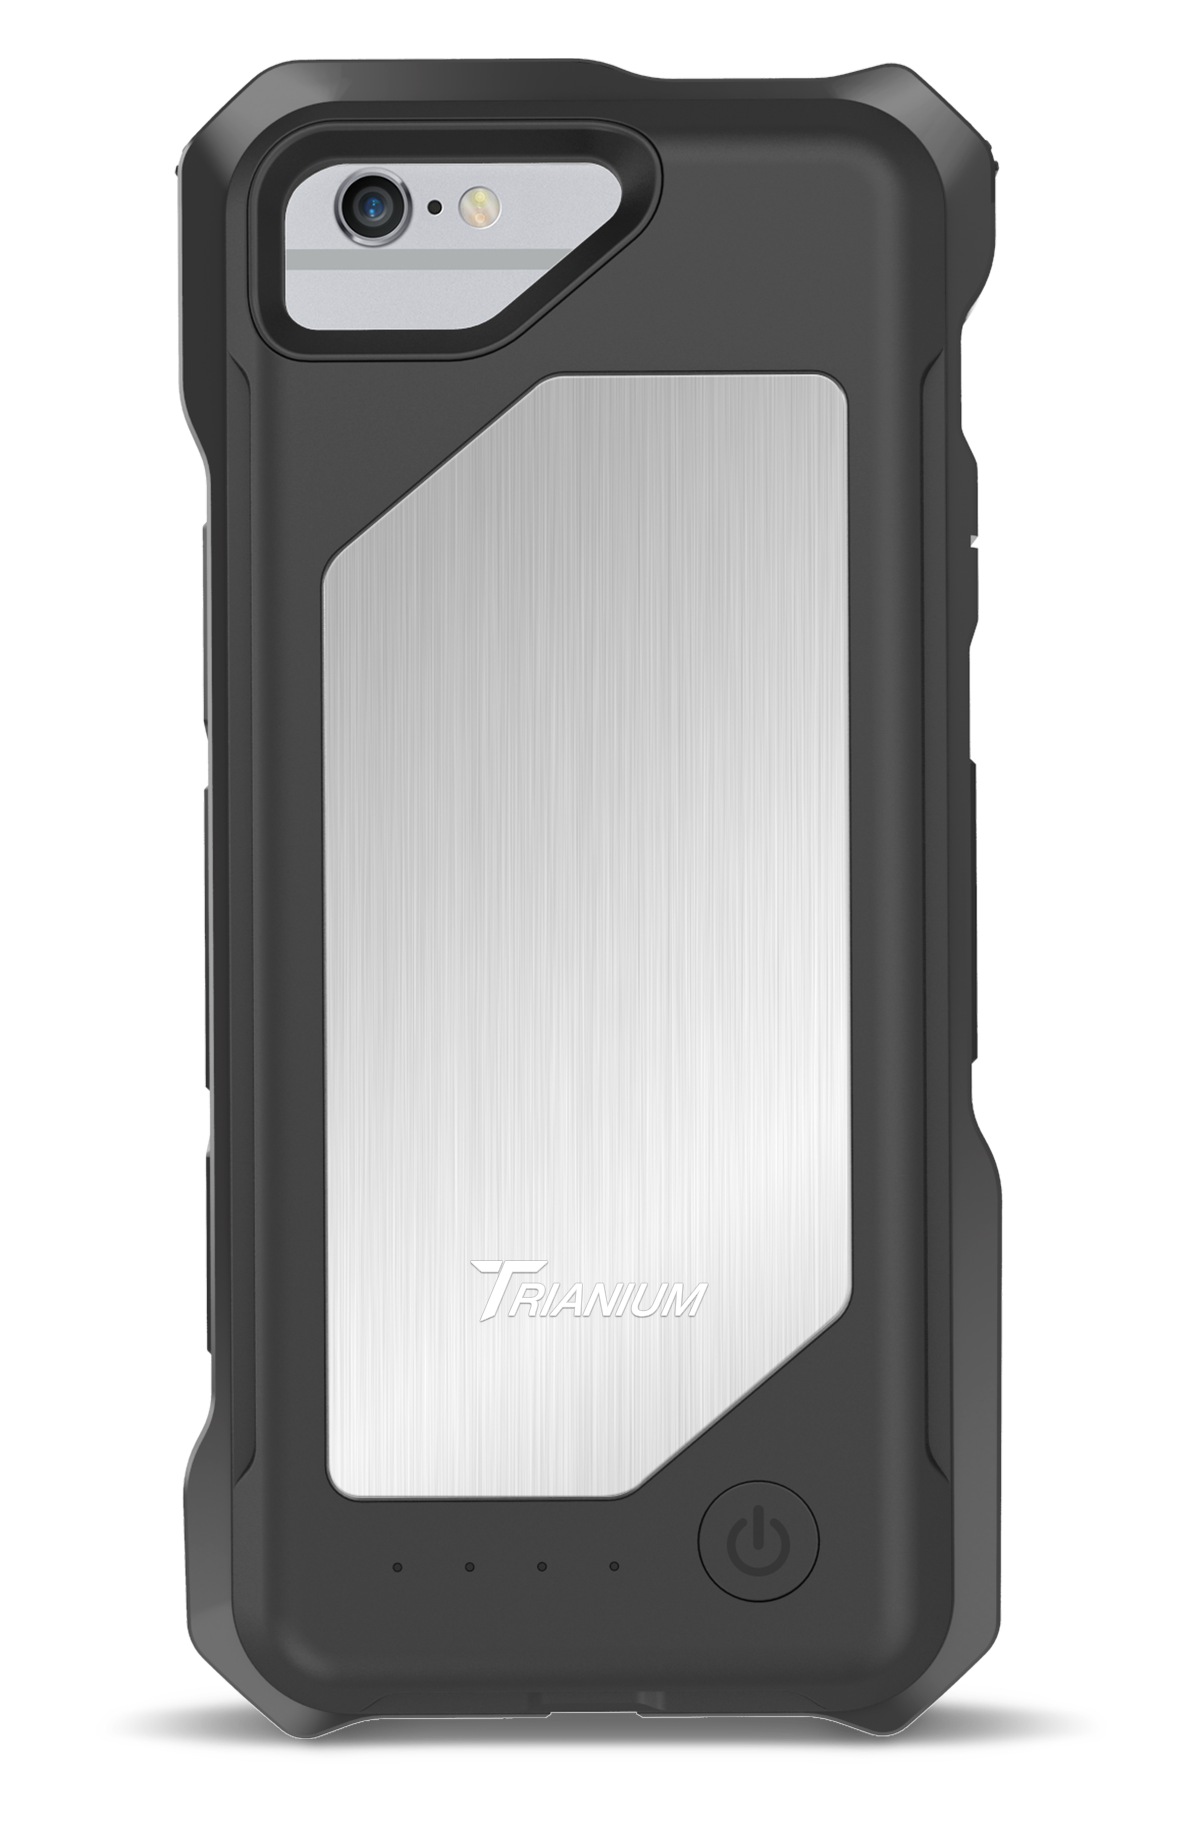 Trianium [Protanium Series] for iPhone 8 Plus – Rose Gold